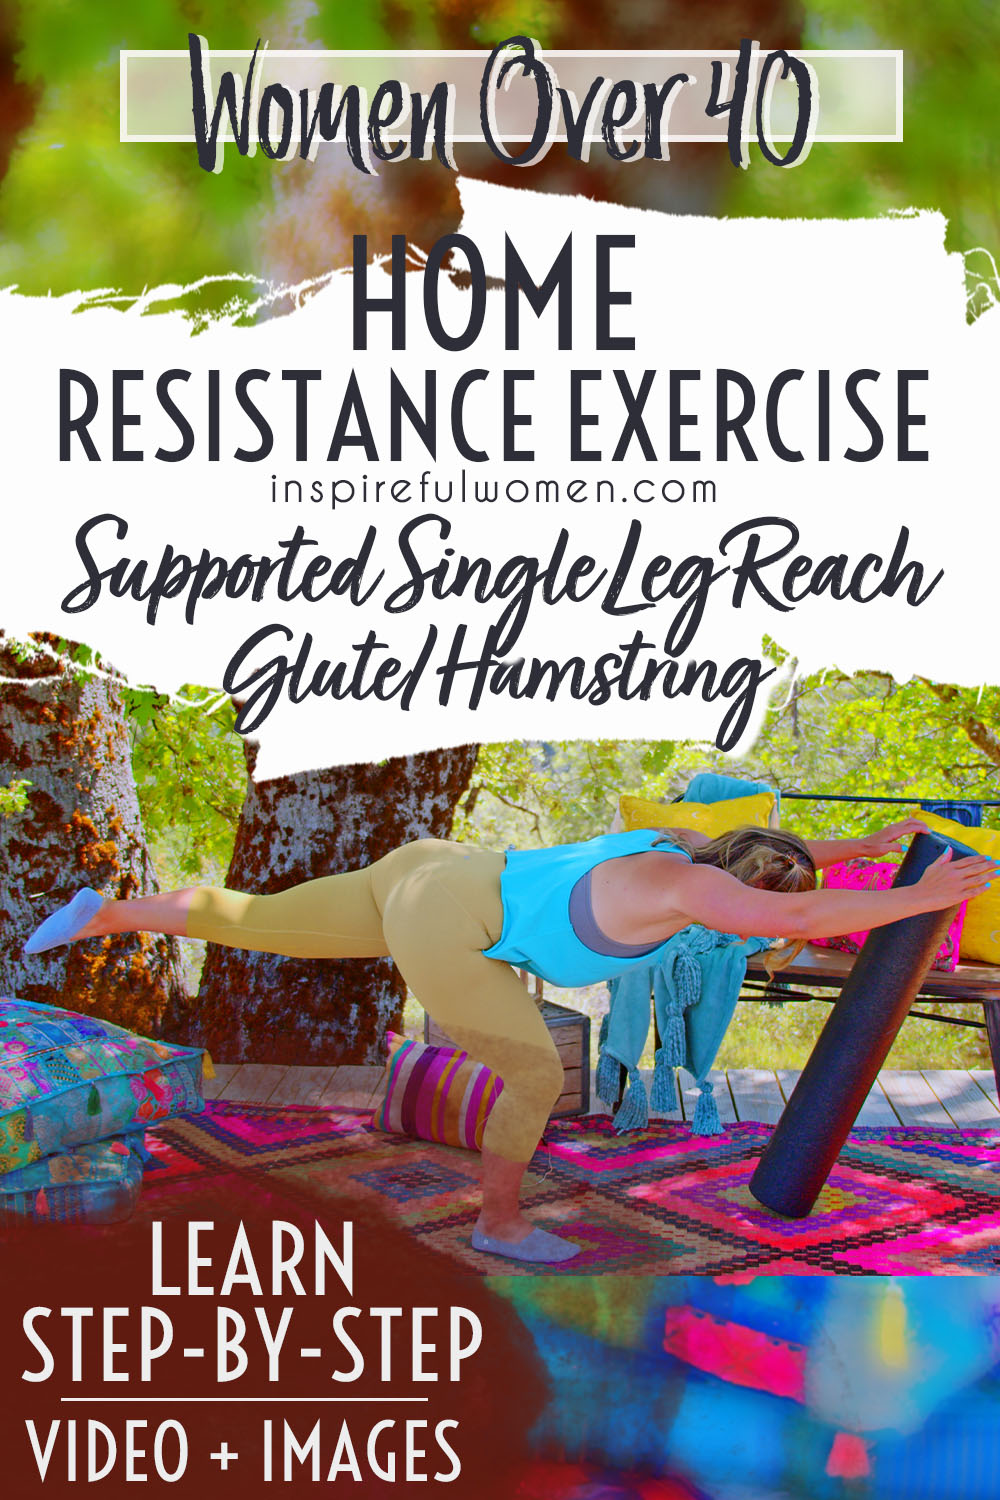 single-leg-reach-beginner-deadlift-no-weights-at-home-balance-exercise-proper-form-women-40+